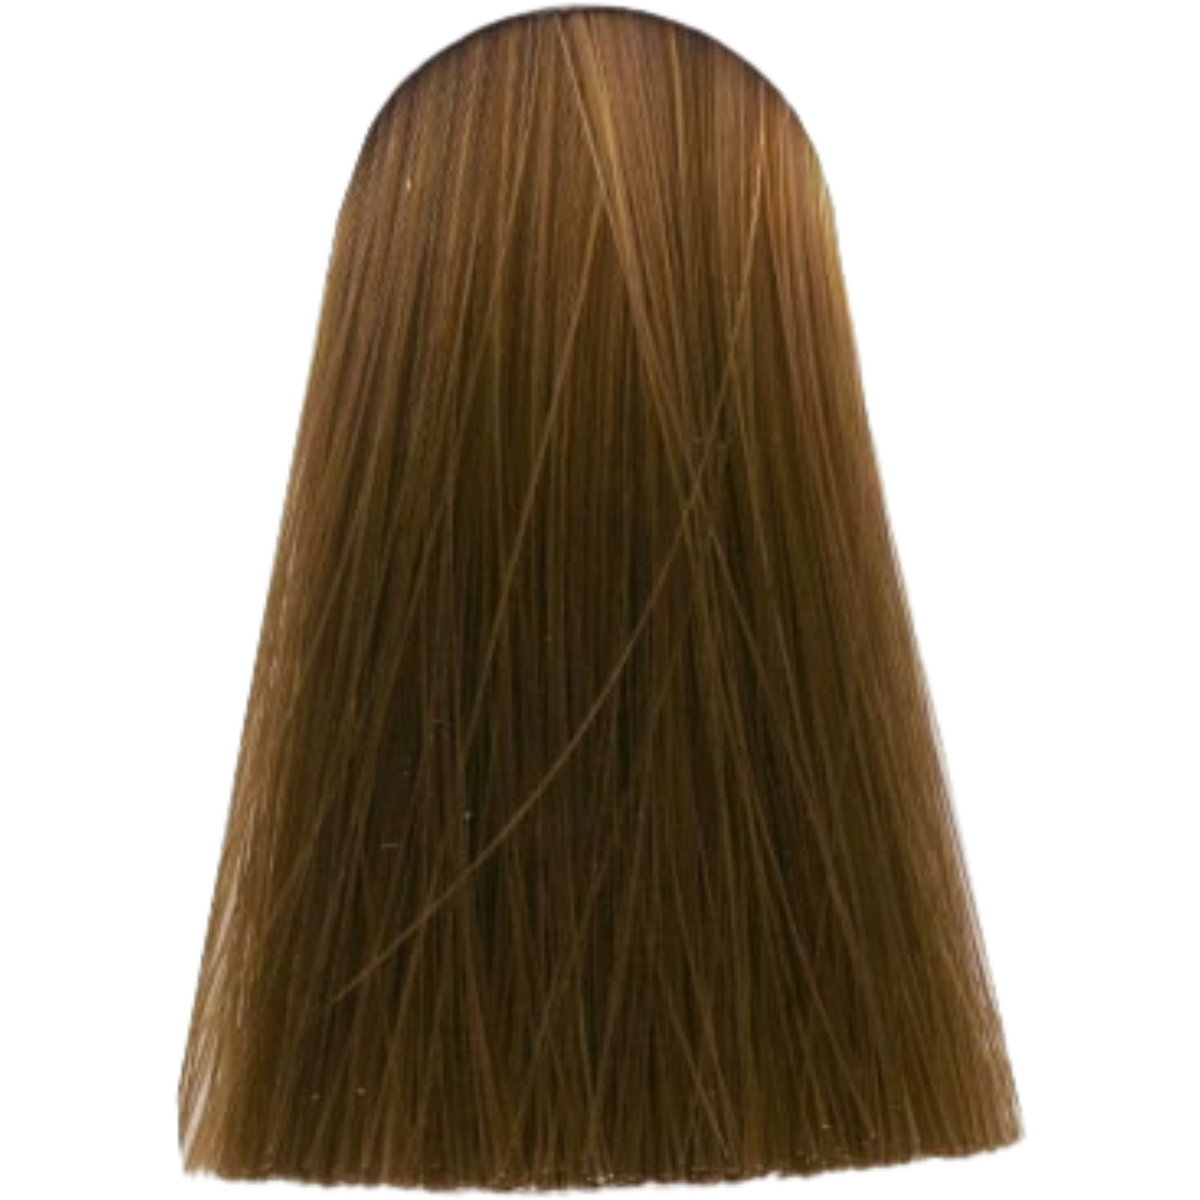 צבע שיער 7.0 MEDIUM BLONDE NATURAL אינדולה INDOLA צבע בסיס לשיער 60 גרם